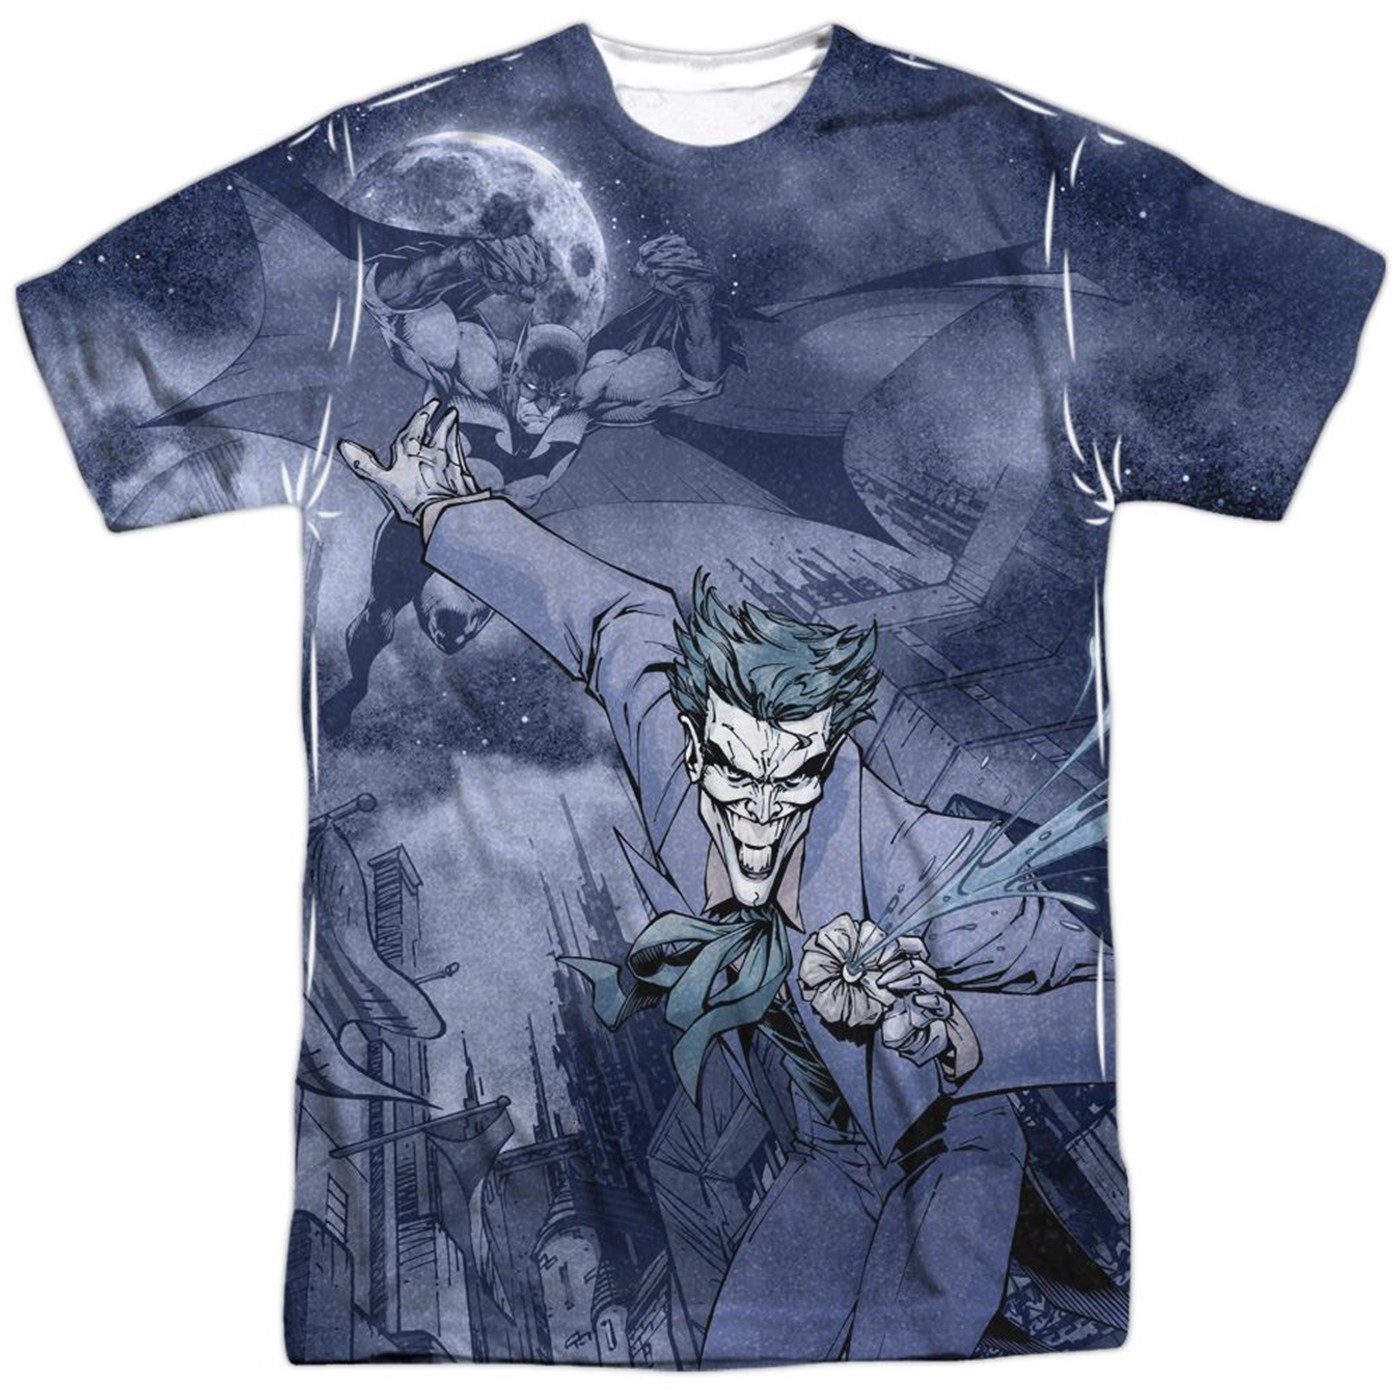 Catch the Joker Batman Front Sublimated Men's T-Shirt